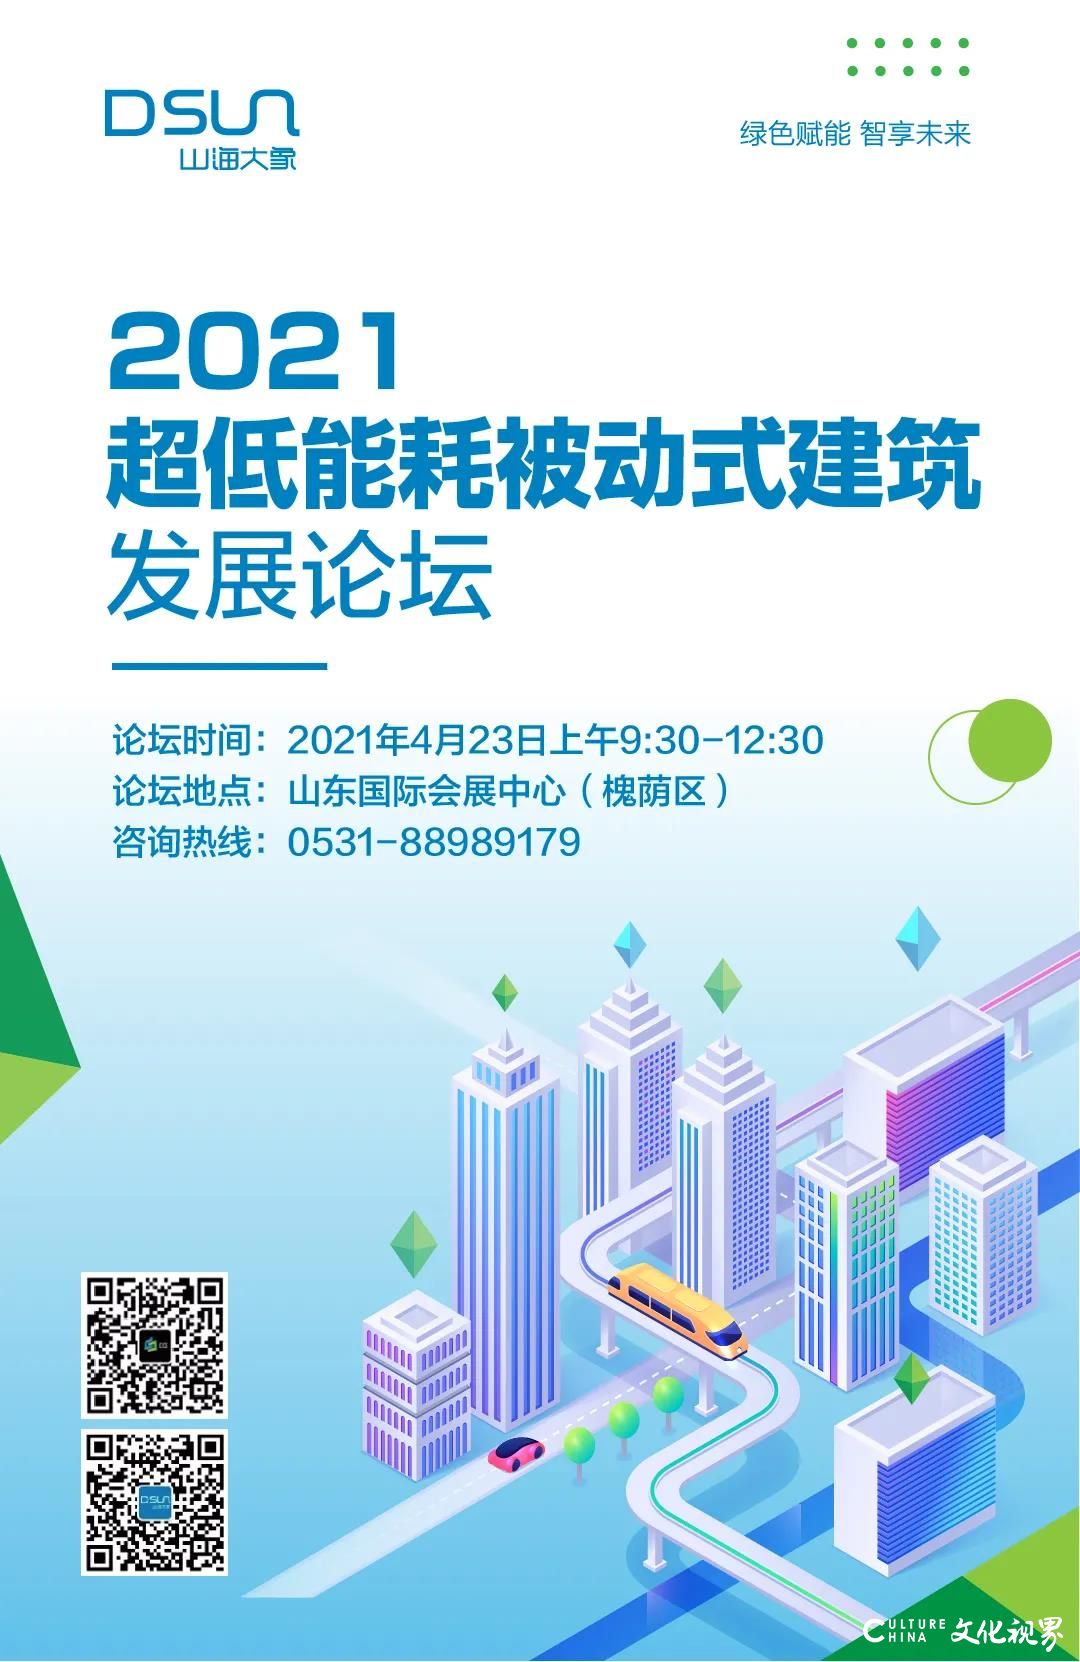 绿色赋能 智享未来——2021超低能耗被动式建筑发展论坛4月23日将在济南举行